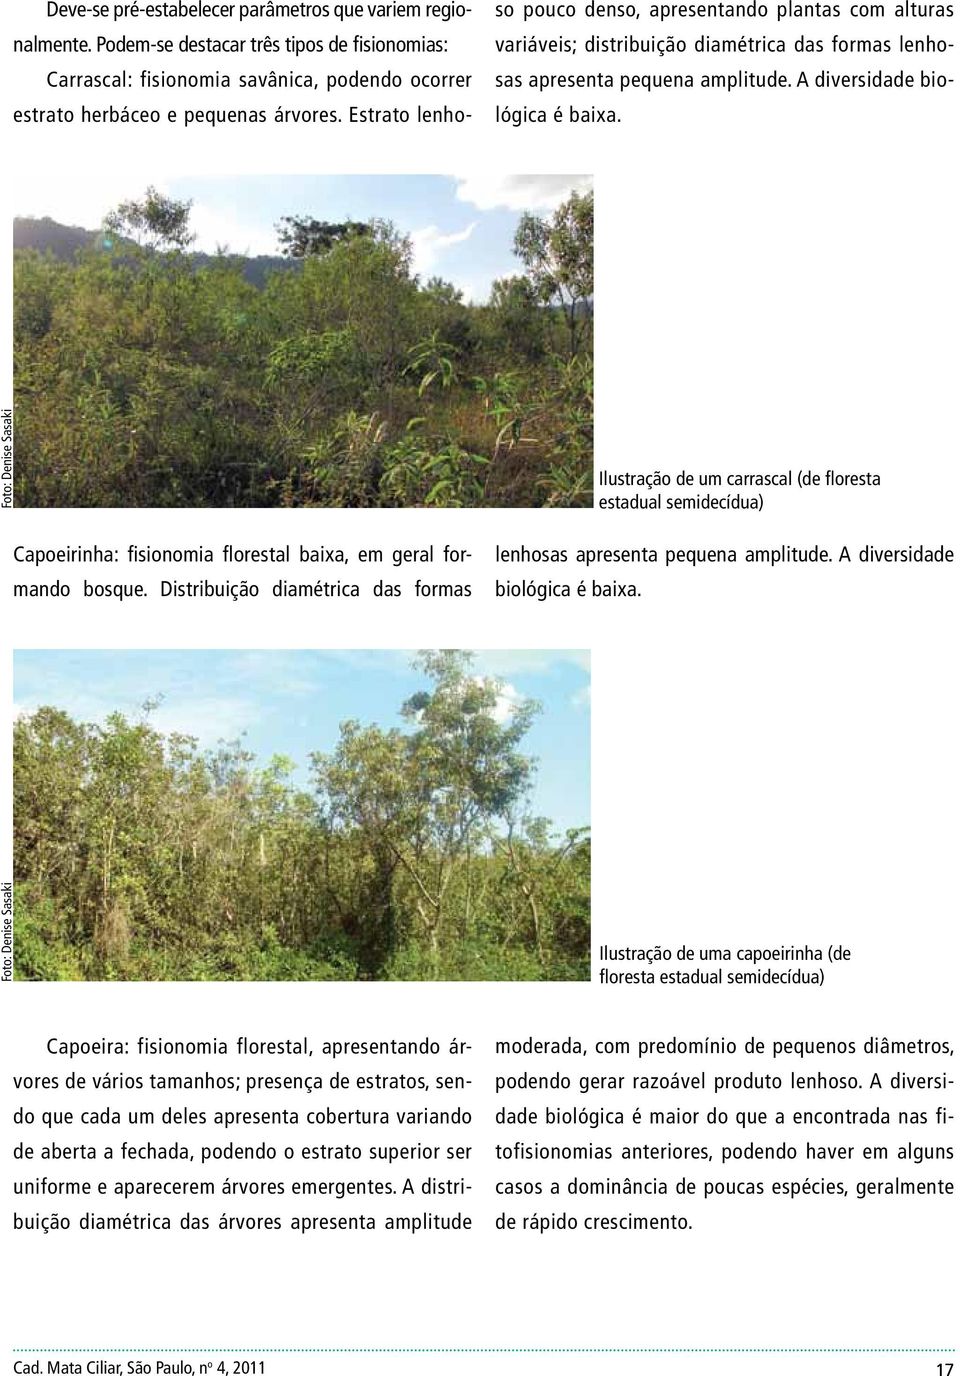 Foto: Denise Sasaki Capoeirinha: fisionomia florestal baixa, em geral formando bosque.